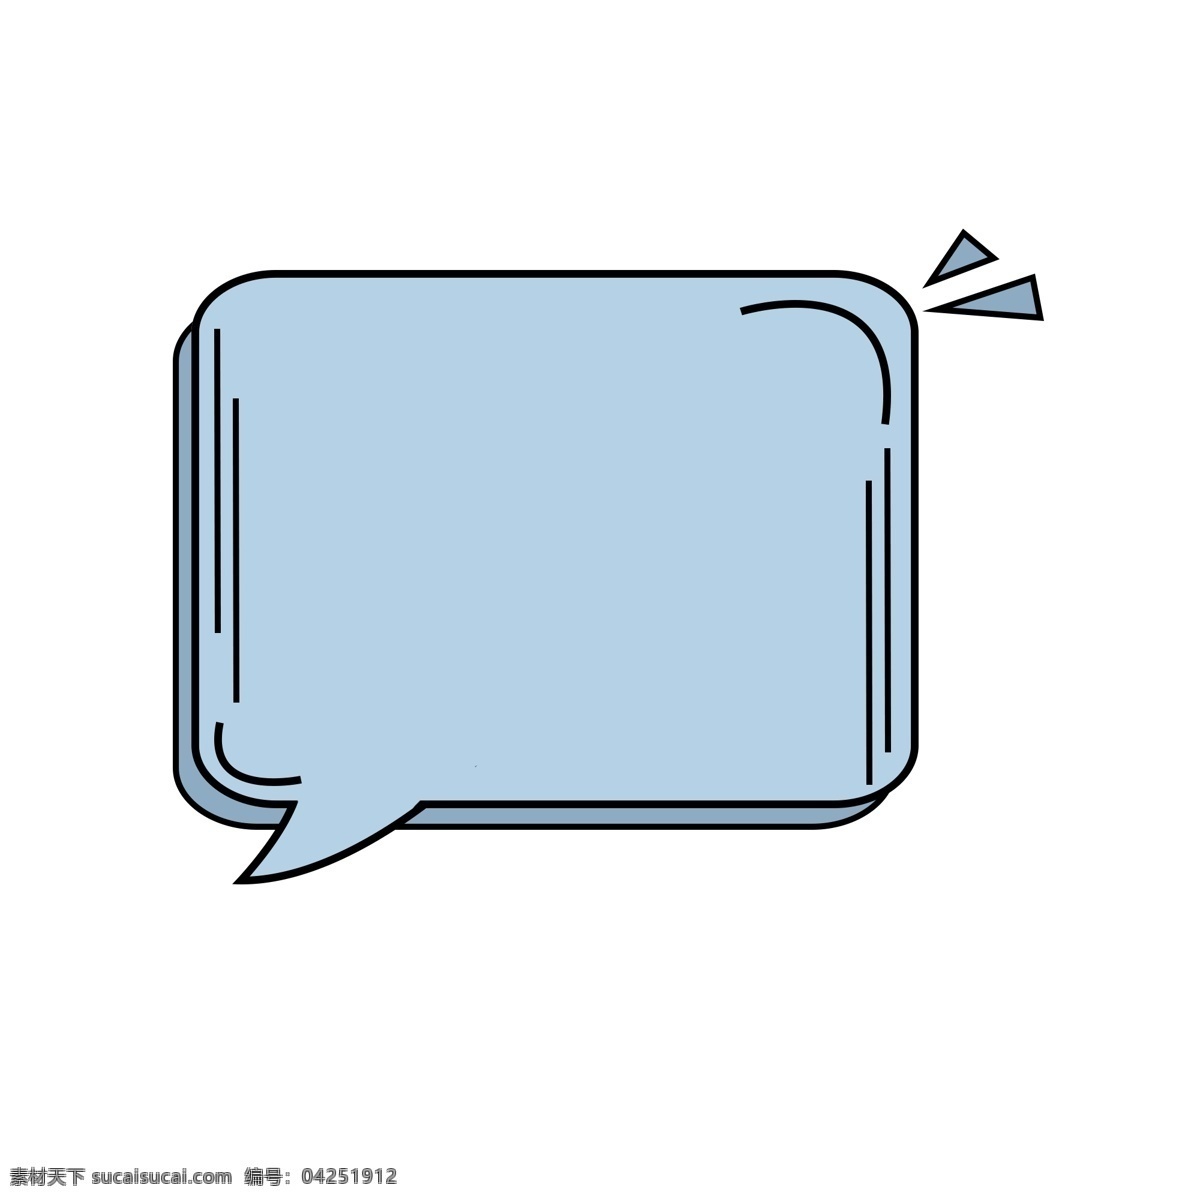 卡通 可爱 简约 蓝色 边框 气泡 框 卡通气泡框 气泡框 蓝色边框 简约边框 对话框 免 扣